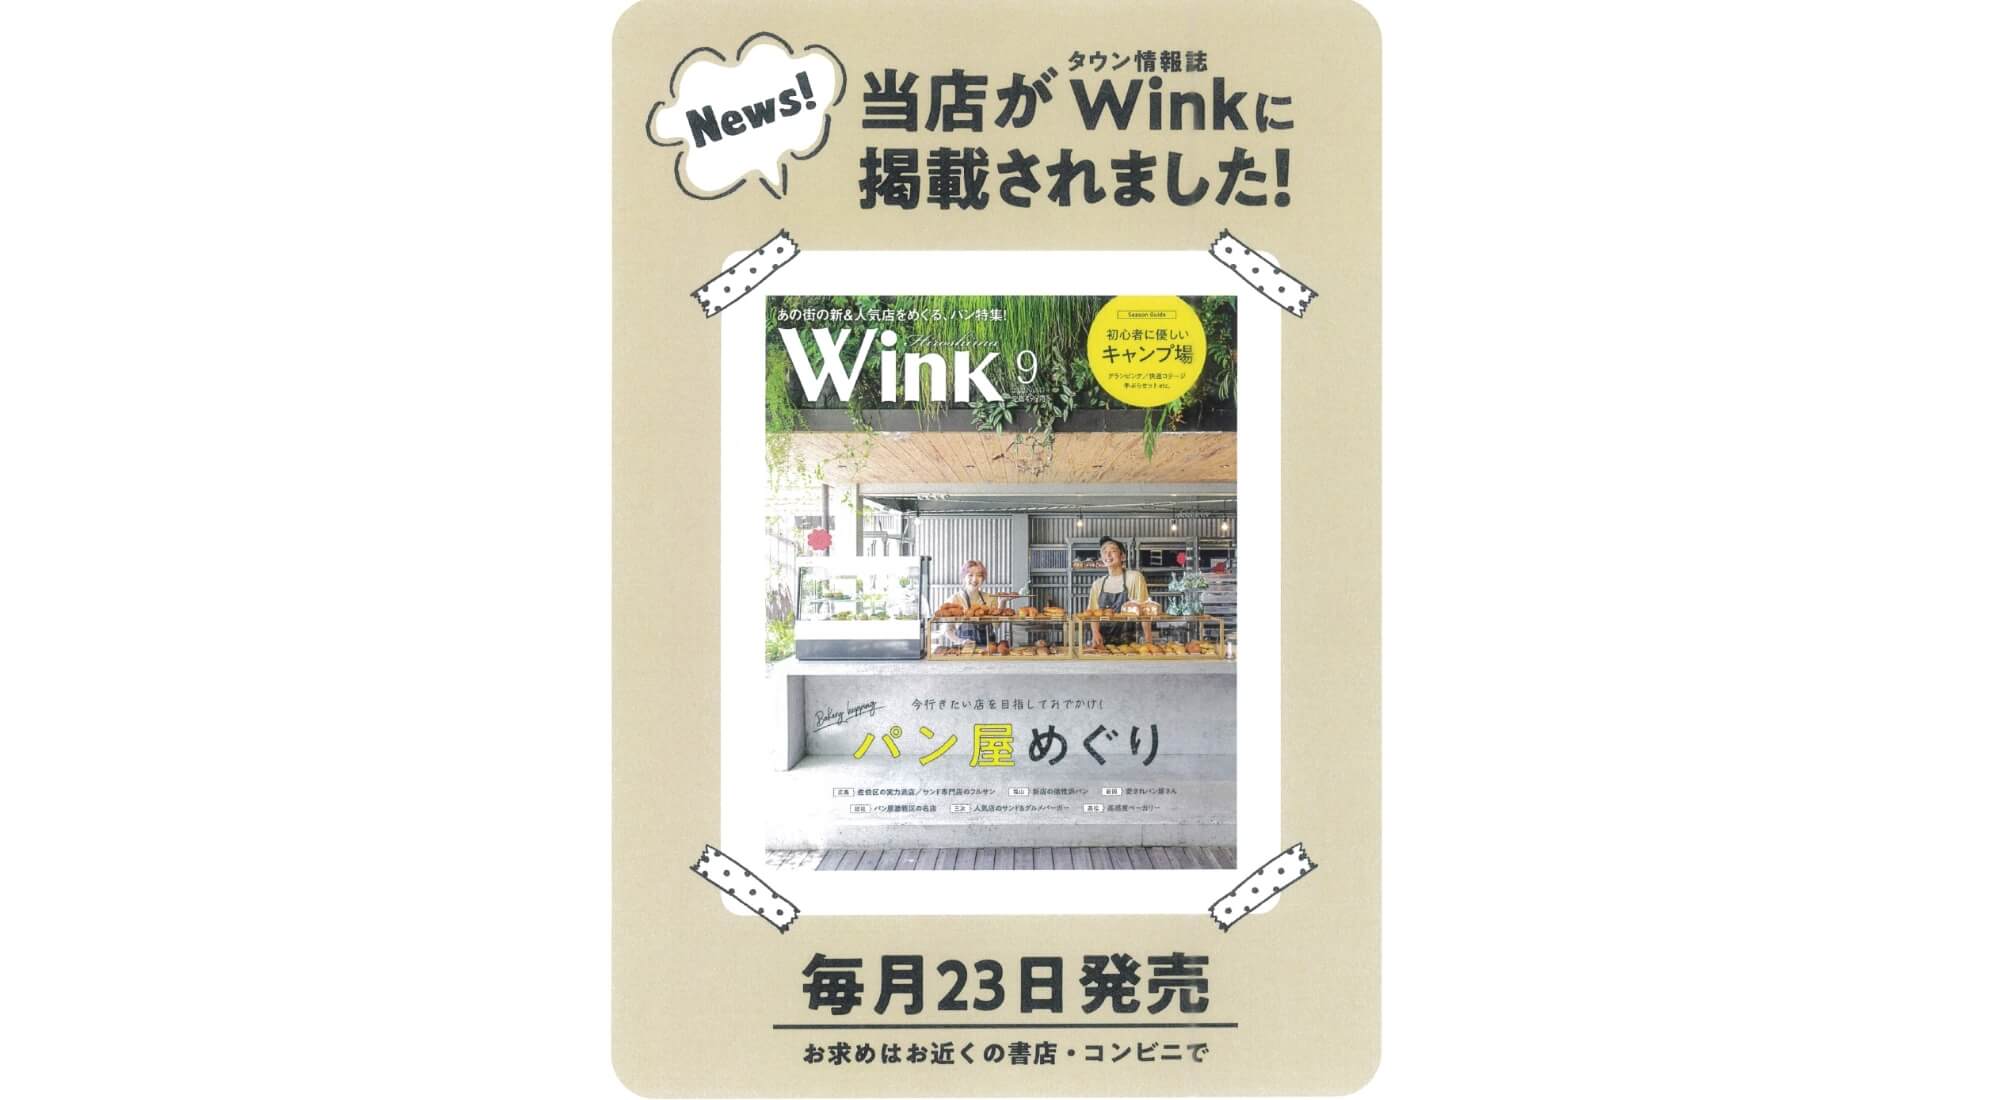 タウン情報誌「ウィンク広島版9月号」にasobientが掲載されました。